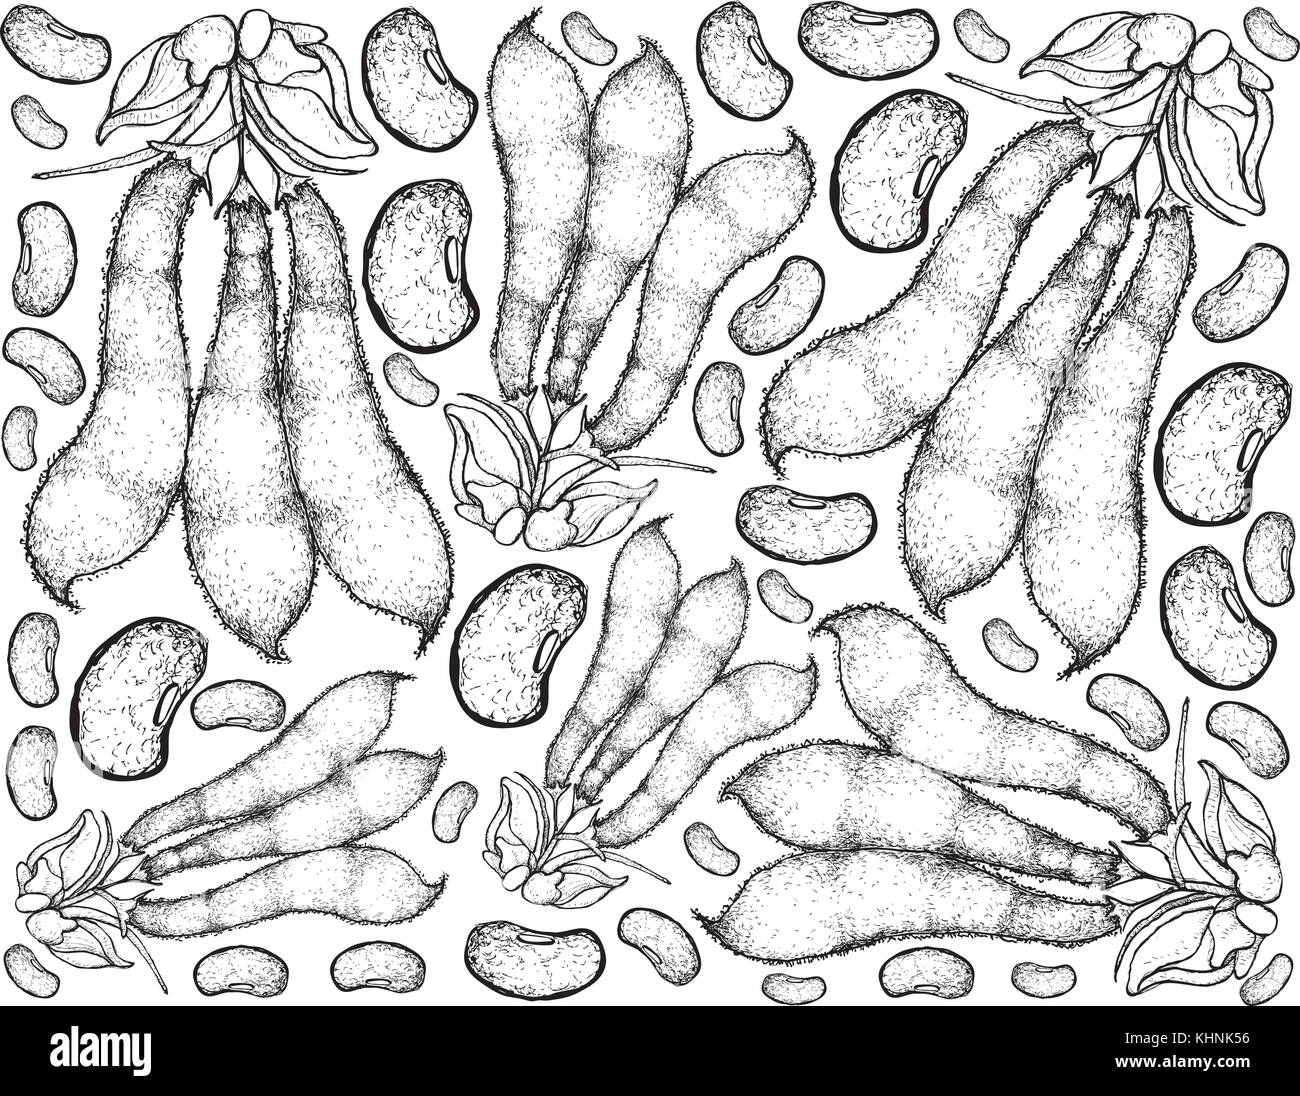 Gemüse, Hintergrund Muster von Hand gezeichnete Skizze velvet Bean oder Mucuna pruriens Pods, gute Quelle von Ballaststoffen, Vitaminen und minera Stock Vektor